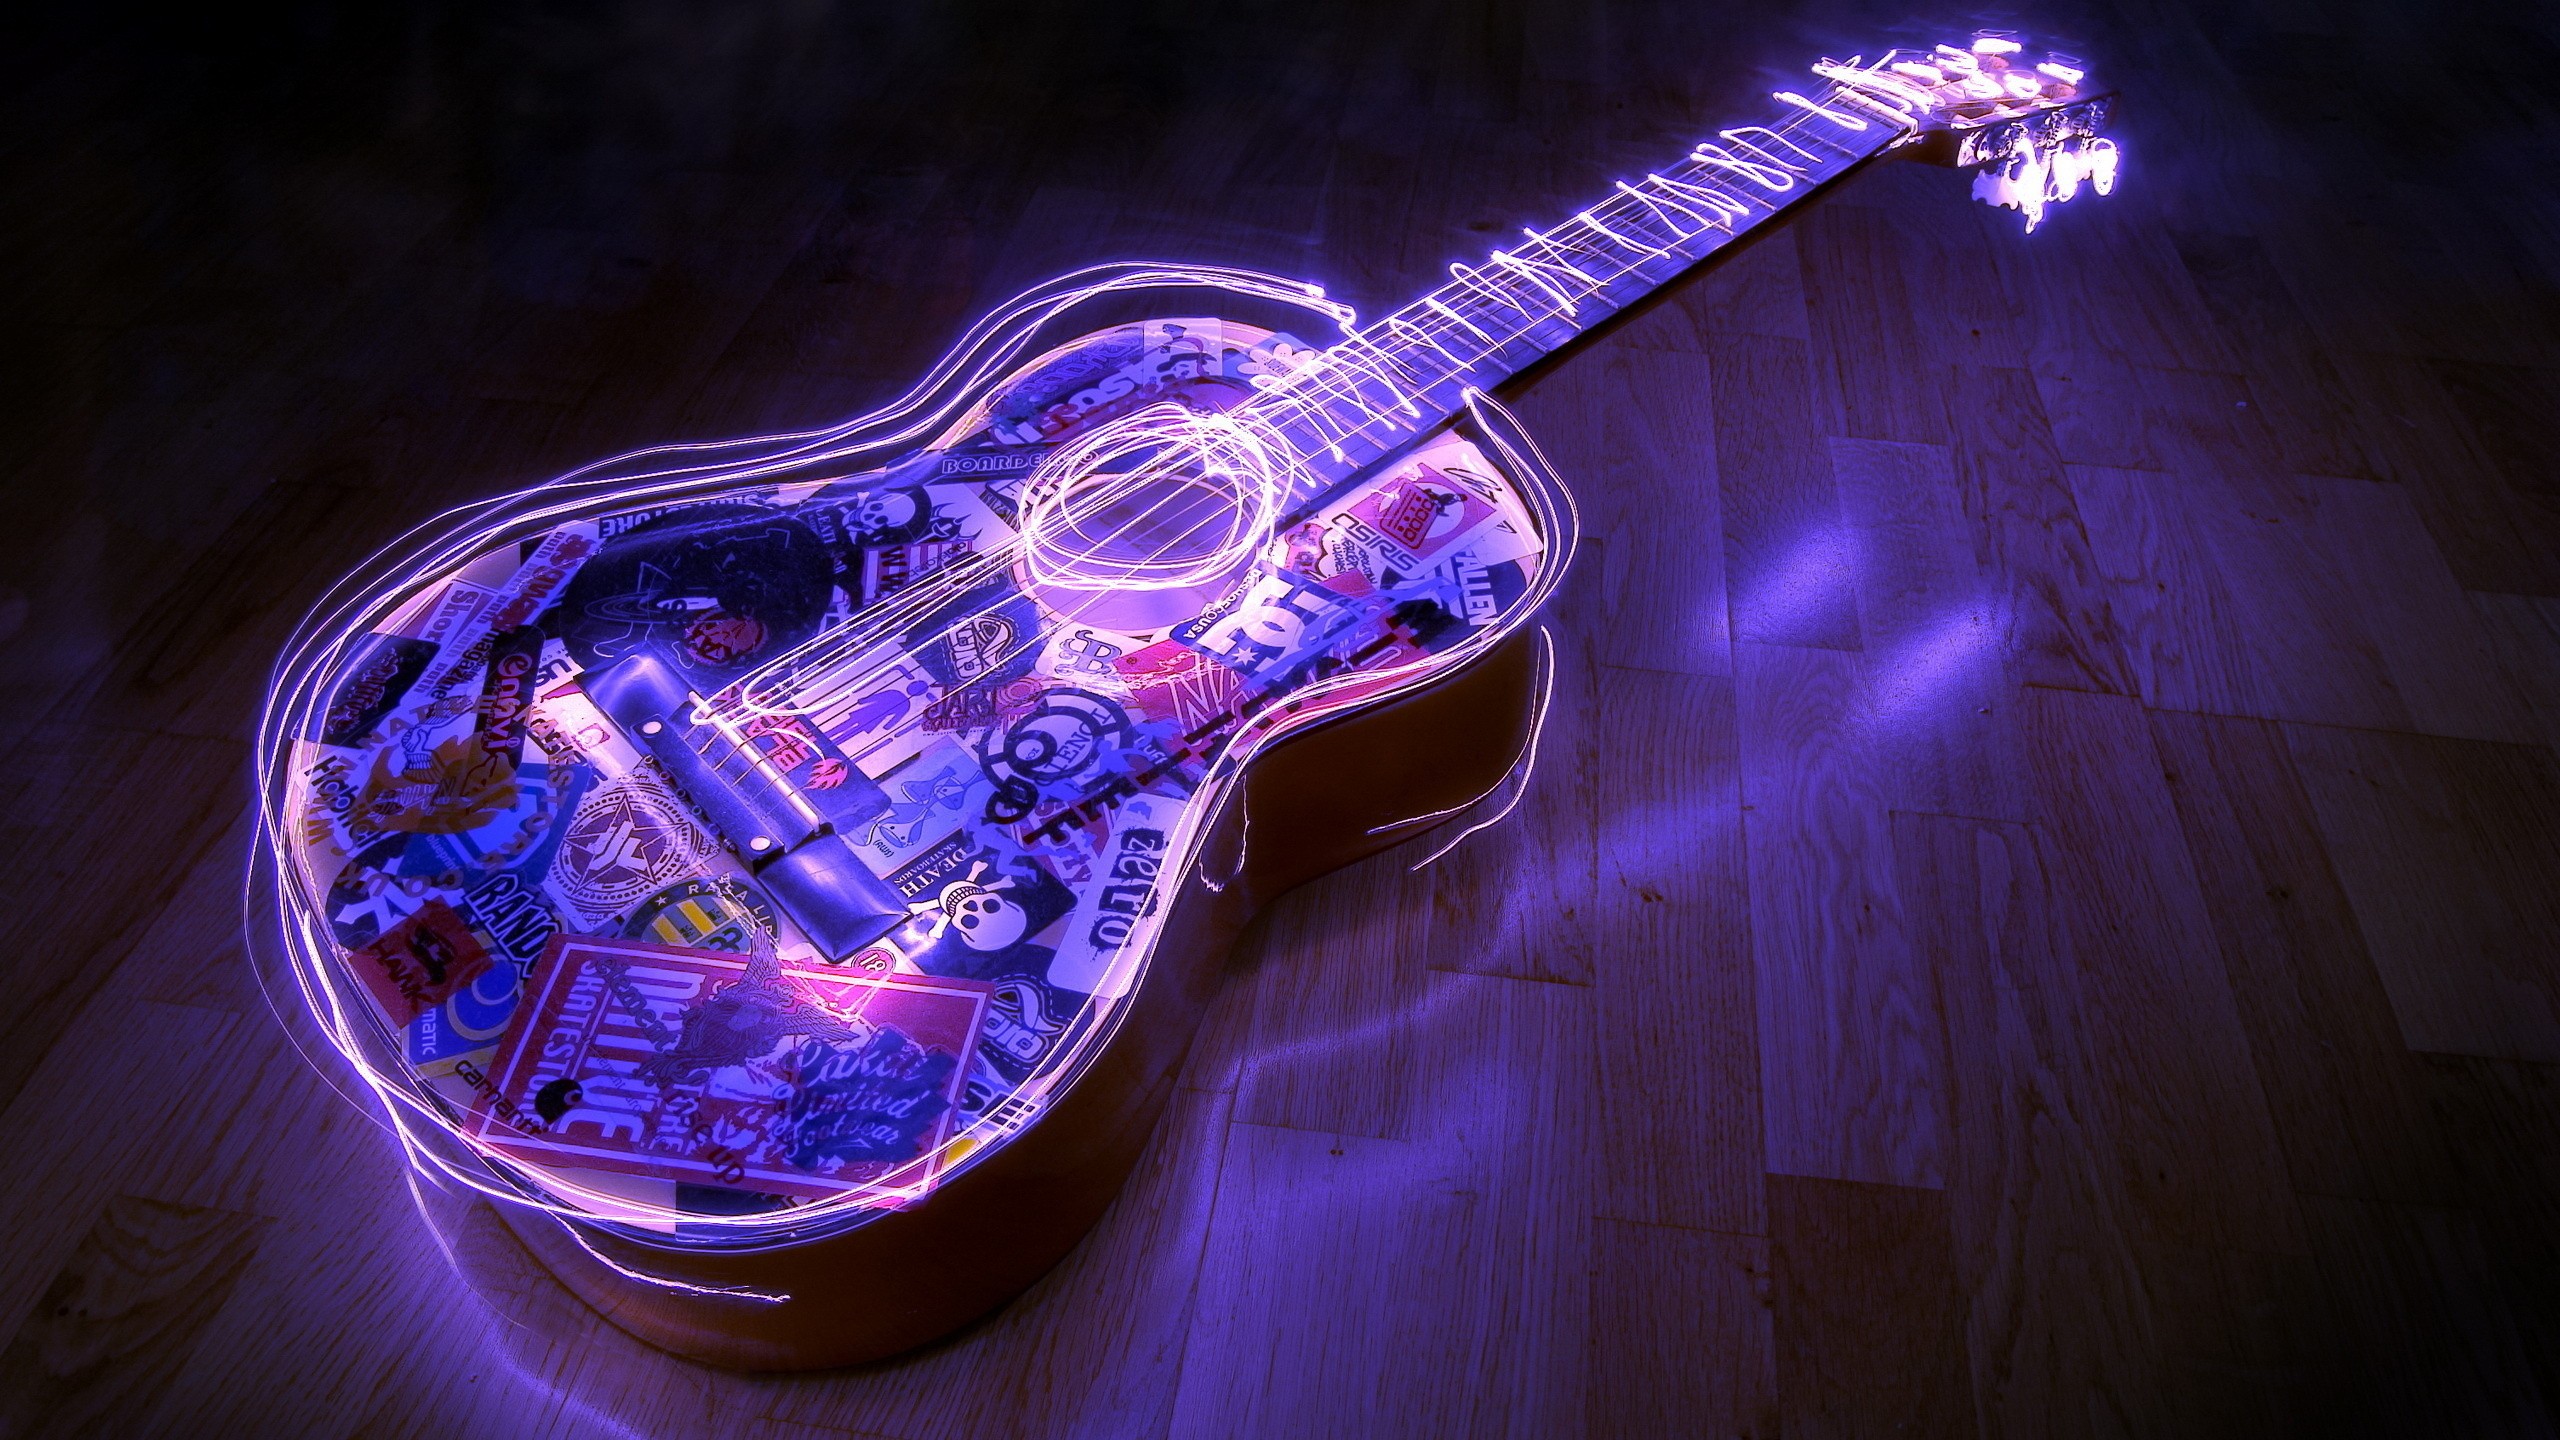 General 2560x1440 guitar music long exposure musical instrument purple